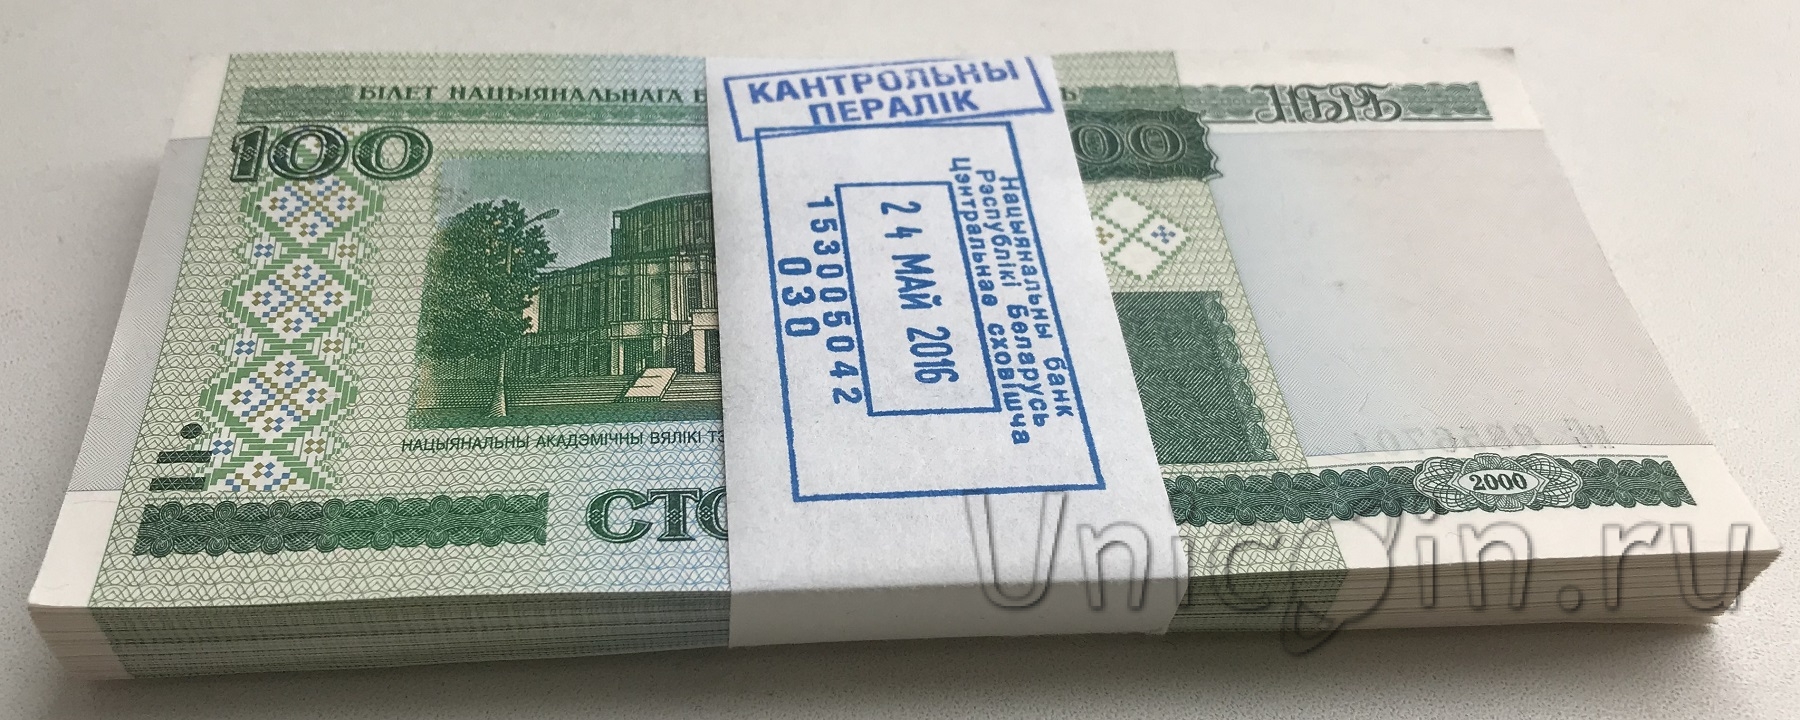 Сколько в пачке 2000 рублей